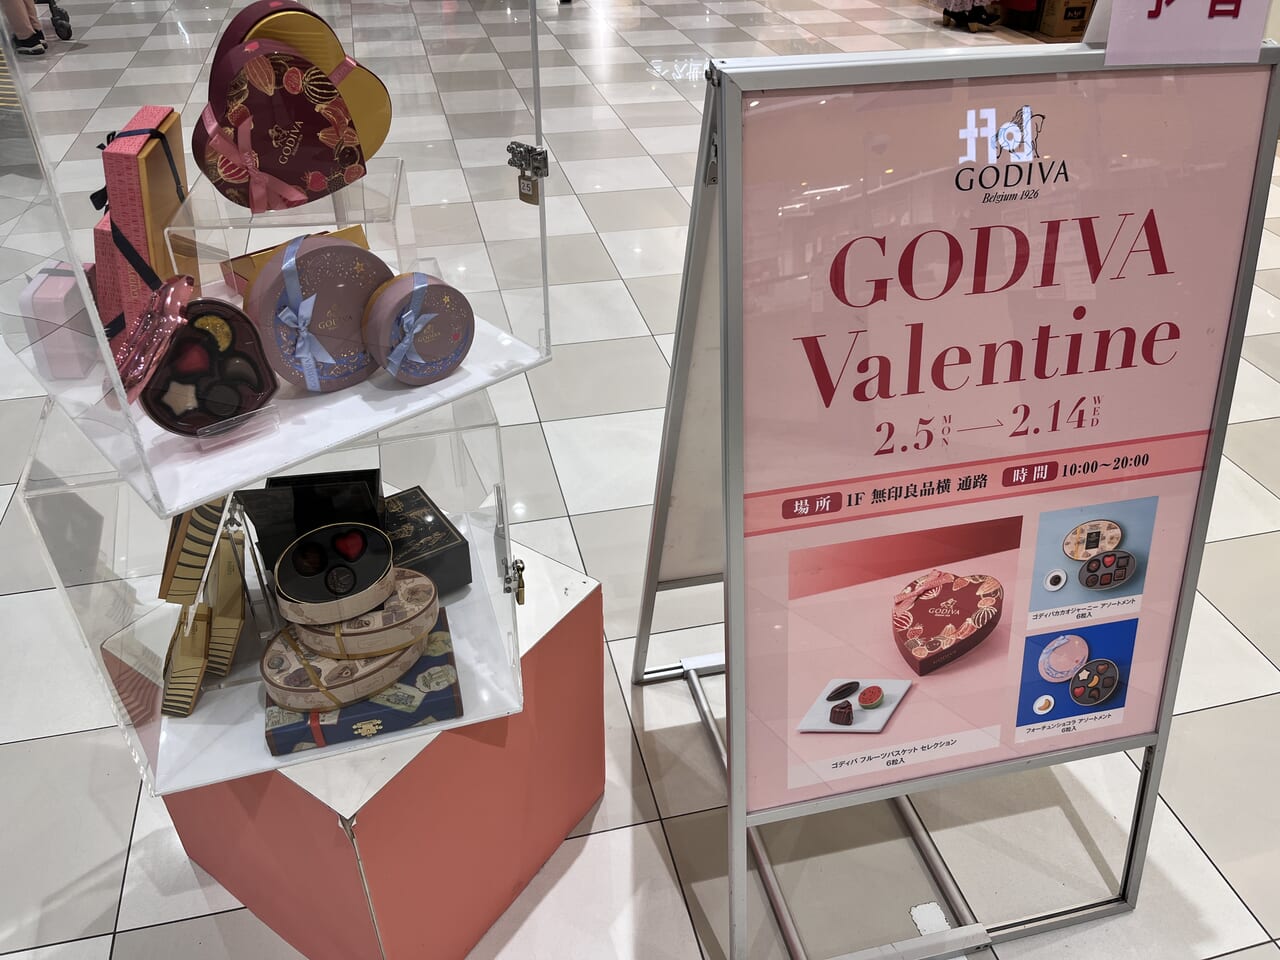 「GODIVA Valentine」の開催告知のポスター